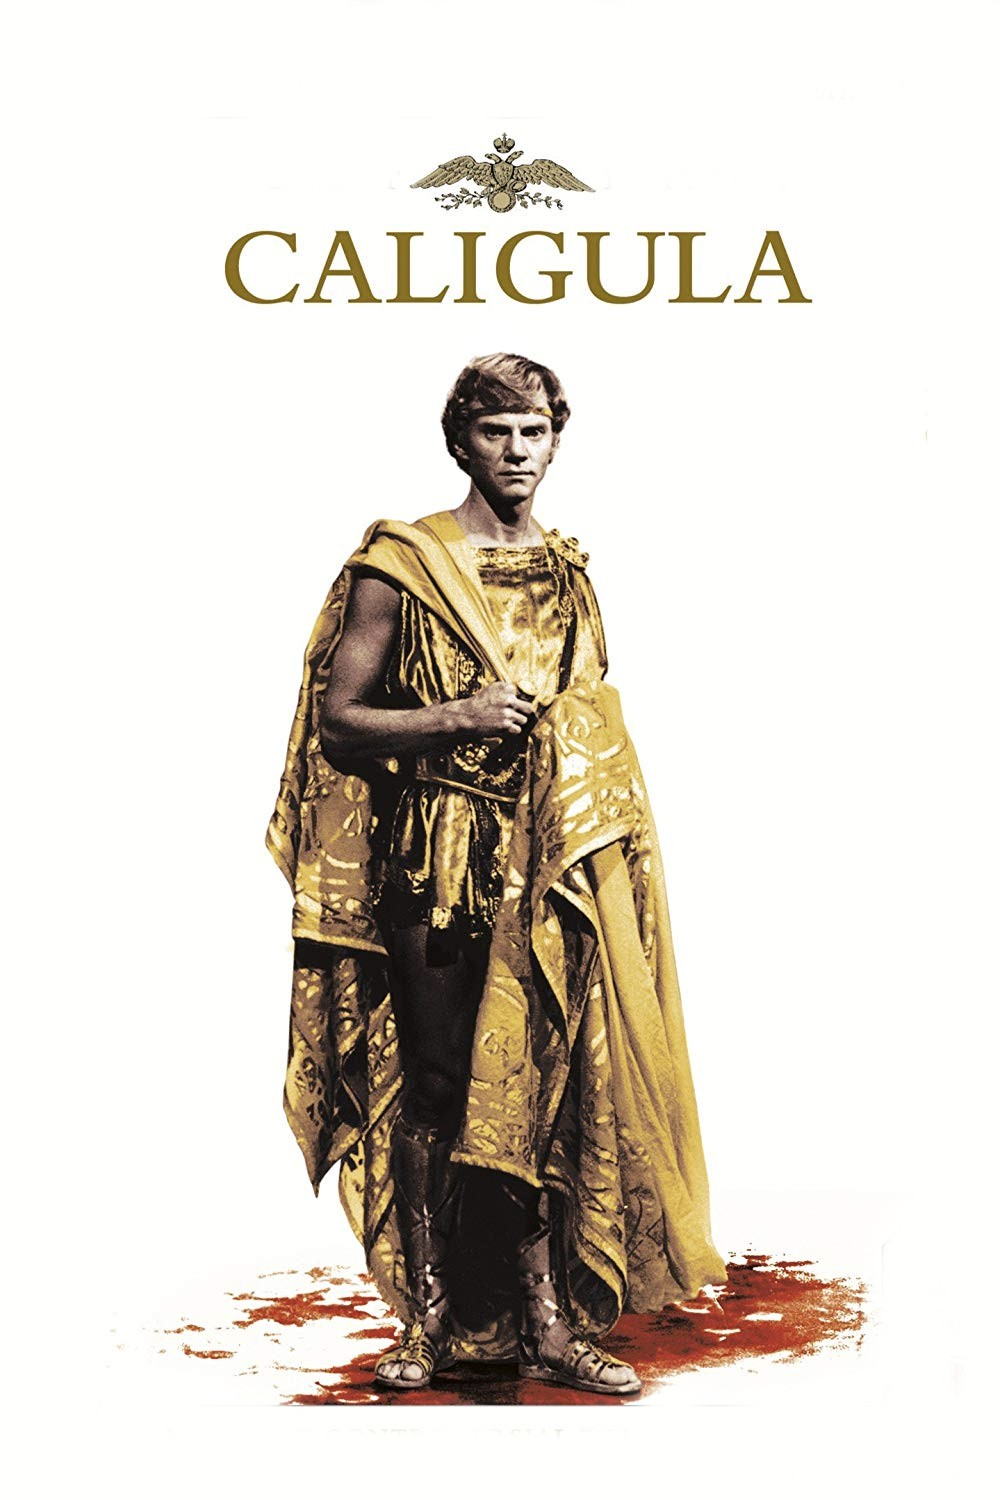 Pelicula porno caligula ver Caligula Filmin